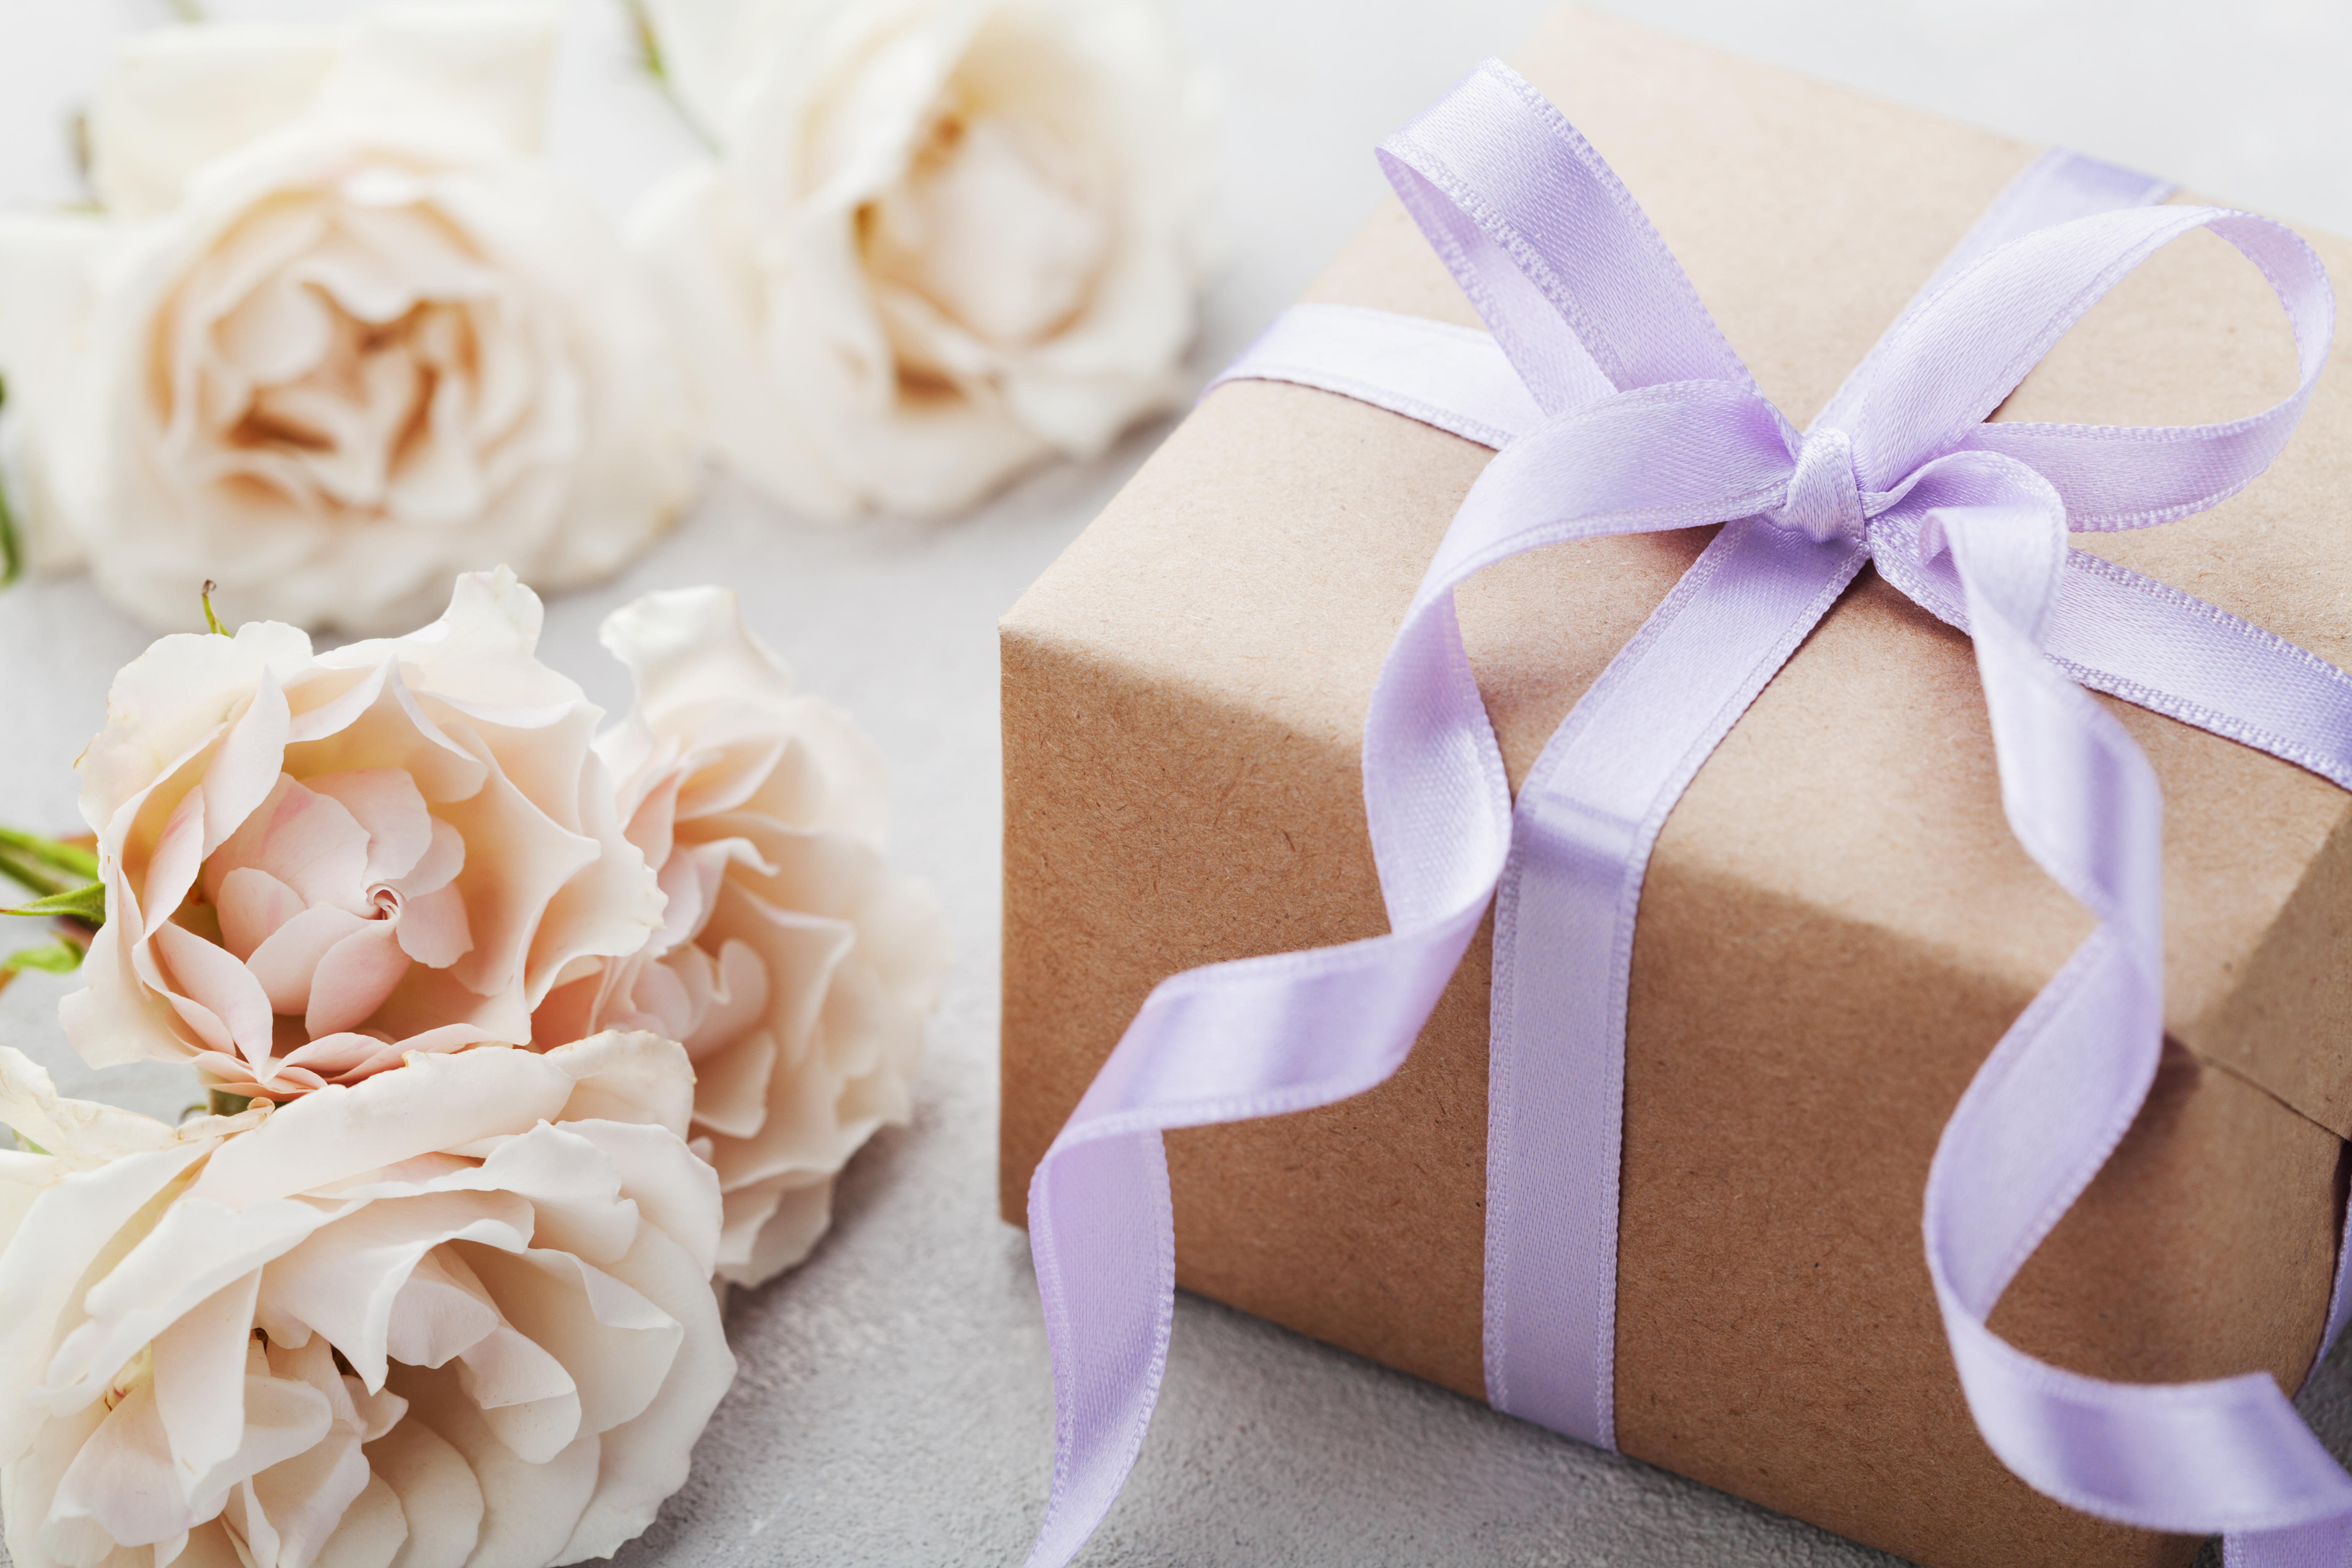 Eine verpackte Geschenkbox | Quelle: Shutterstock